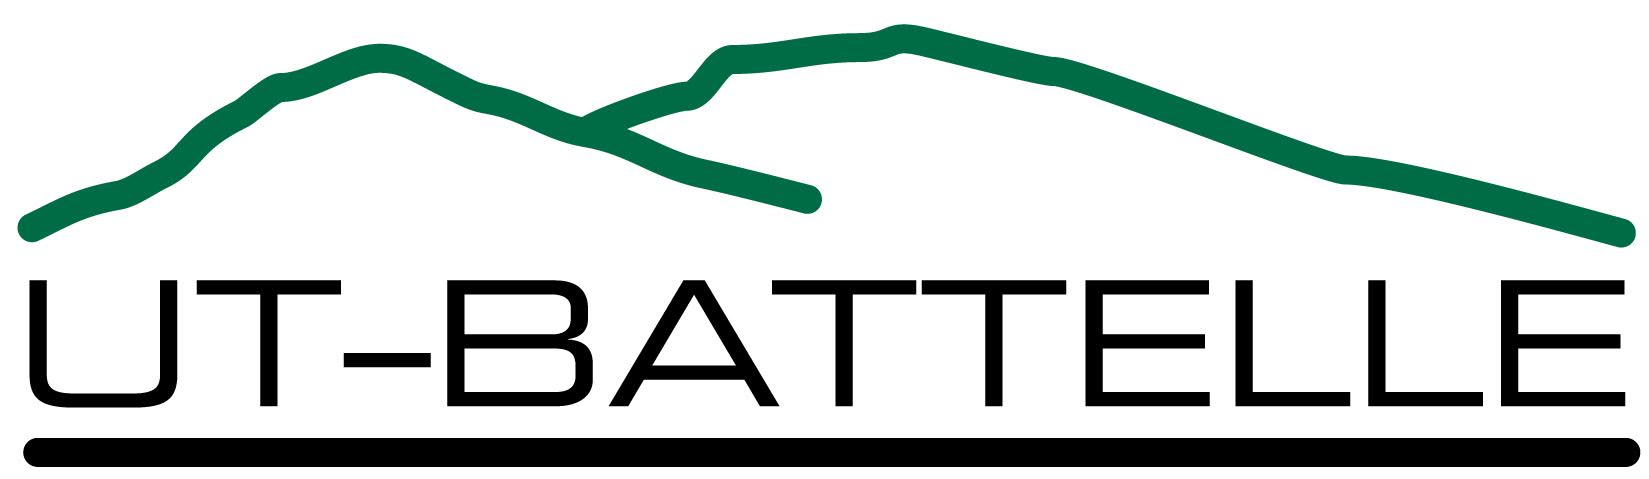 UT Battelle